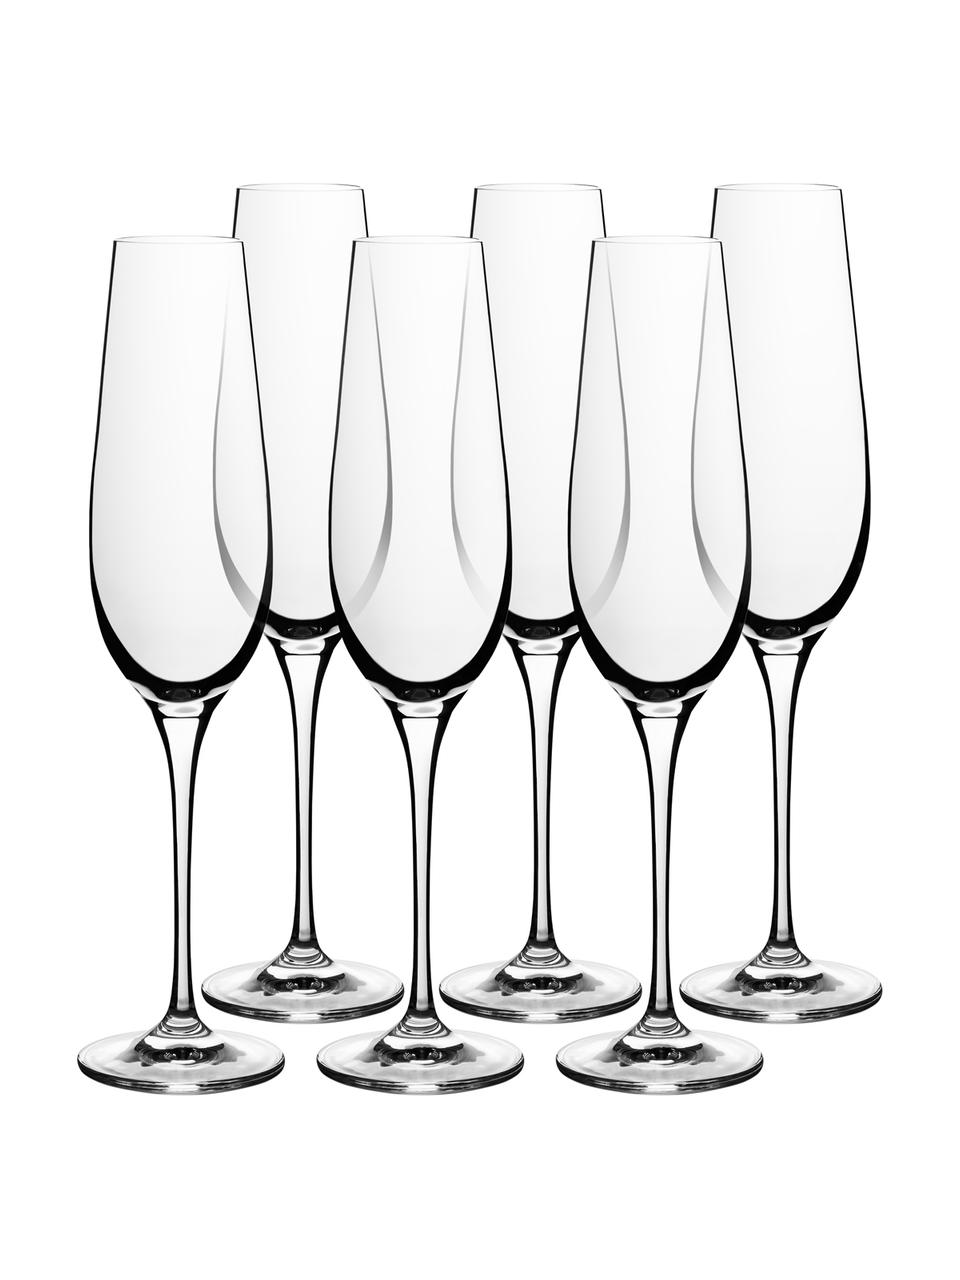 Súprava pohárov na sekt a šampanské z hladkého krištáľového skla Harmony, 6 dielov, Priesvitná